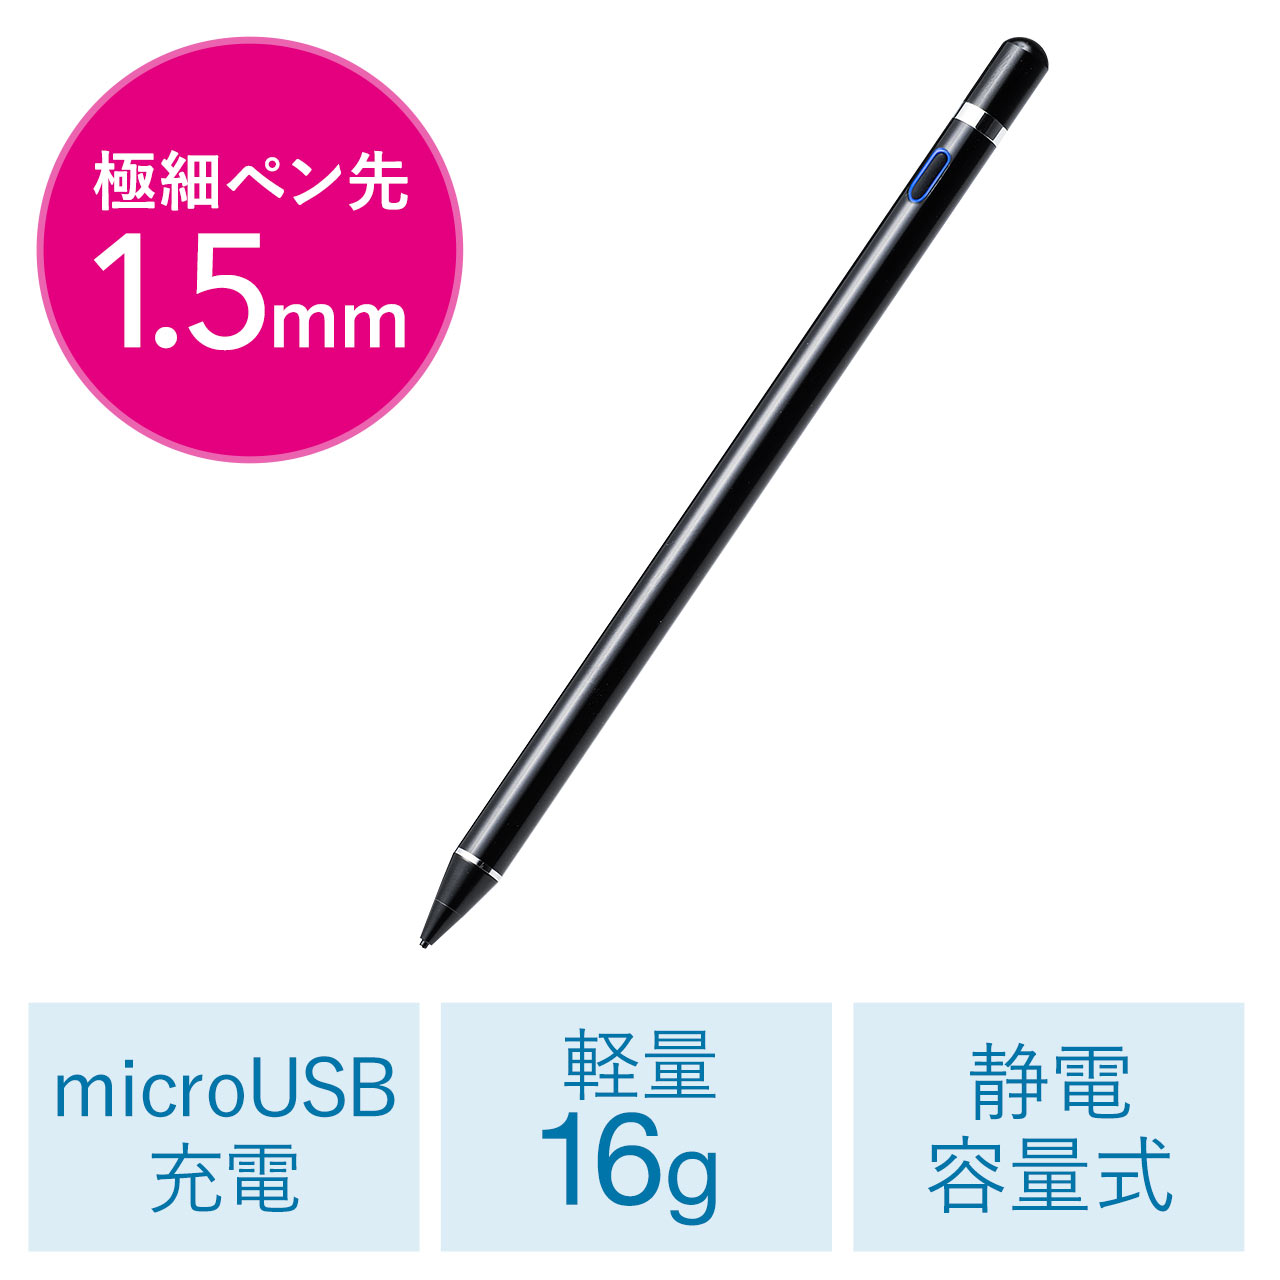 タッチペン スタイラスペン 充電式 静電容量方式 Microusb スマートフォン タブレット Iphone Ipad 0 Pen035bkの販売商品 通販ならサンワダイレクト